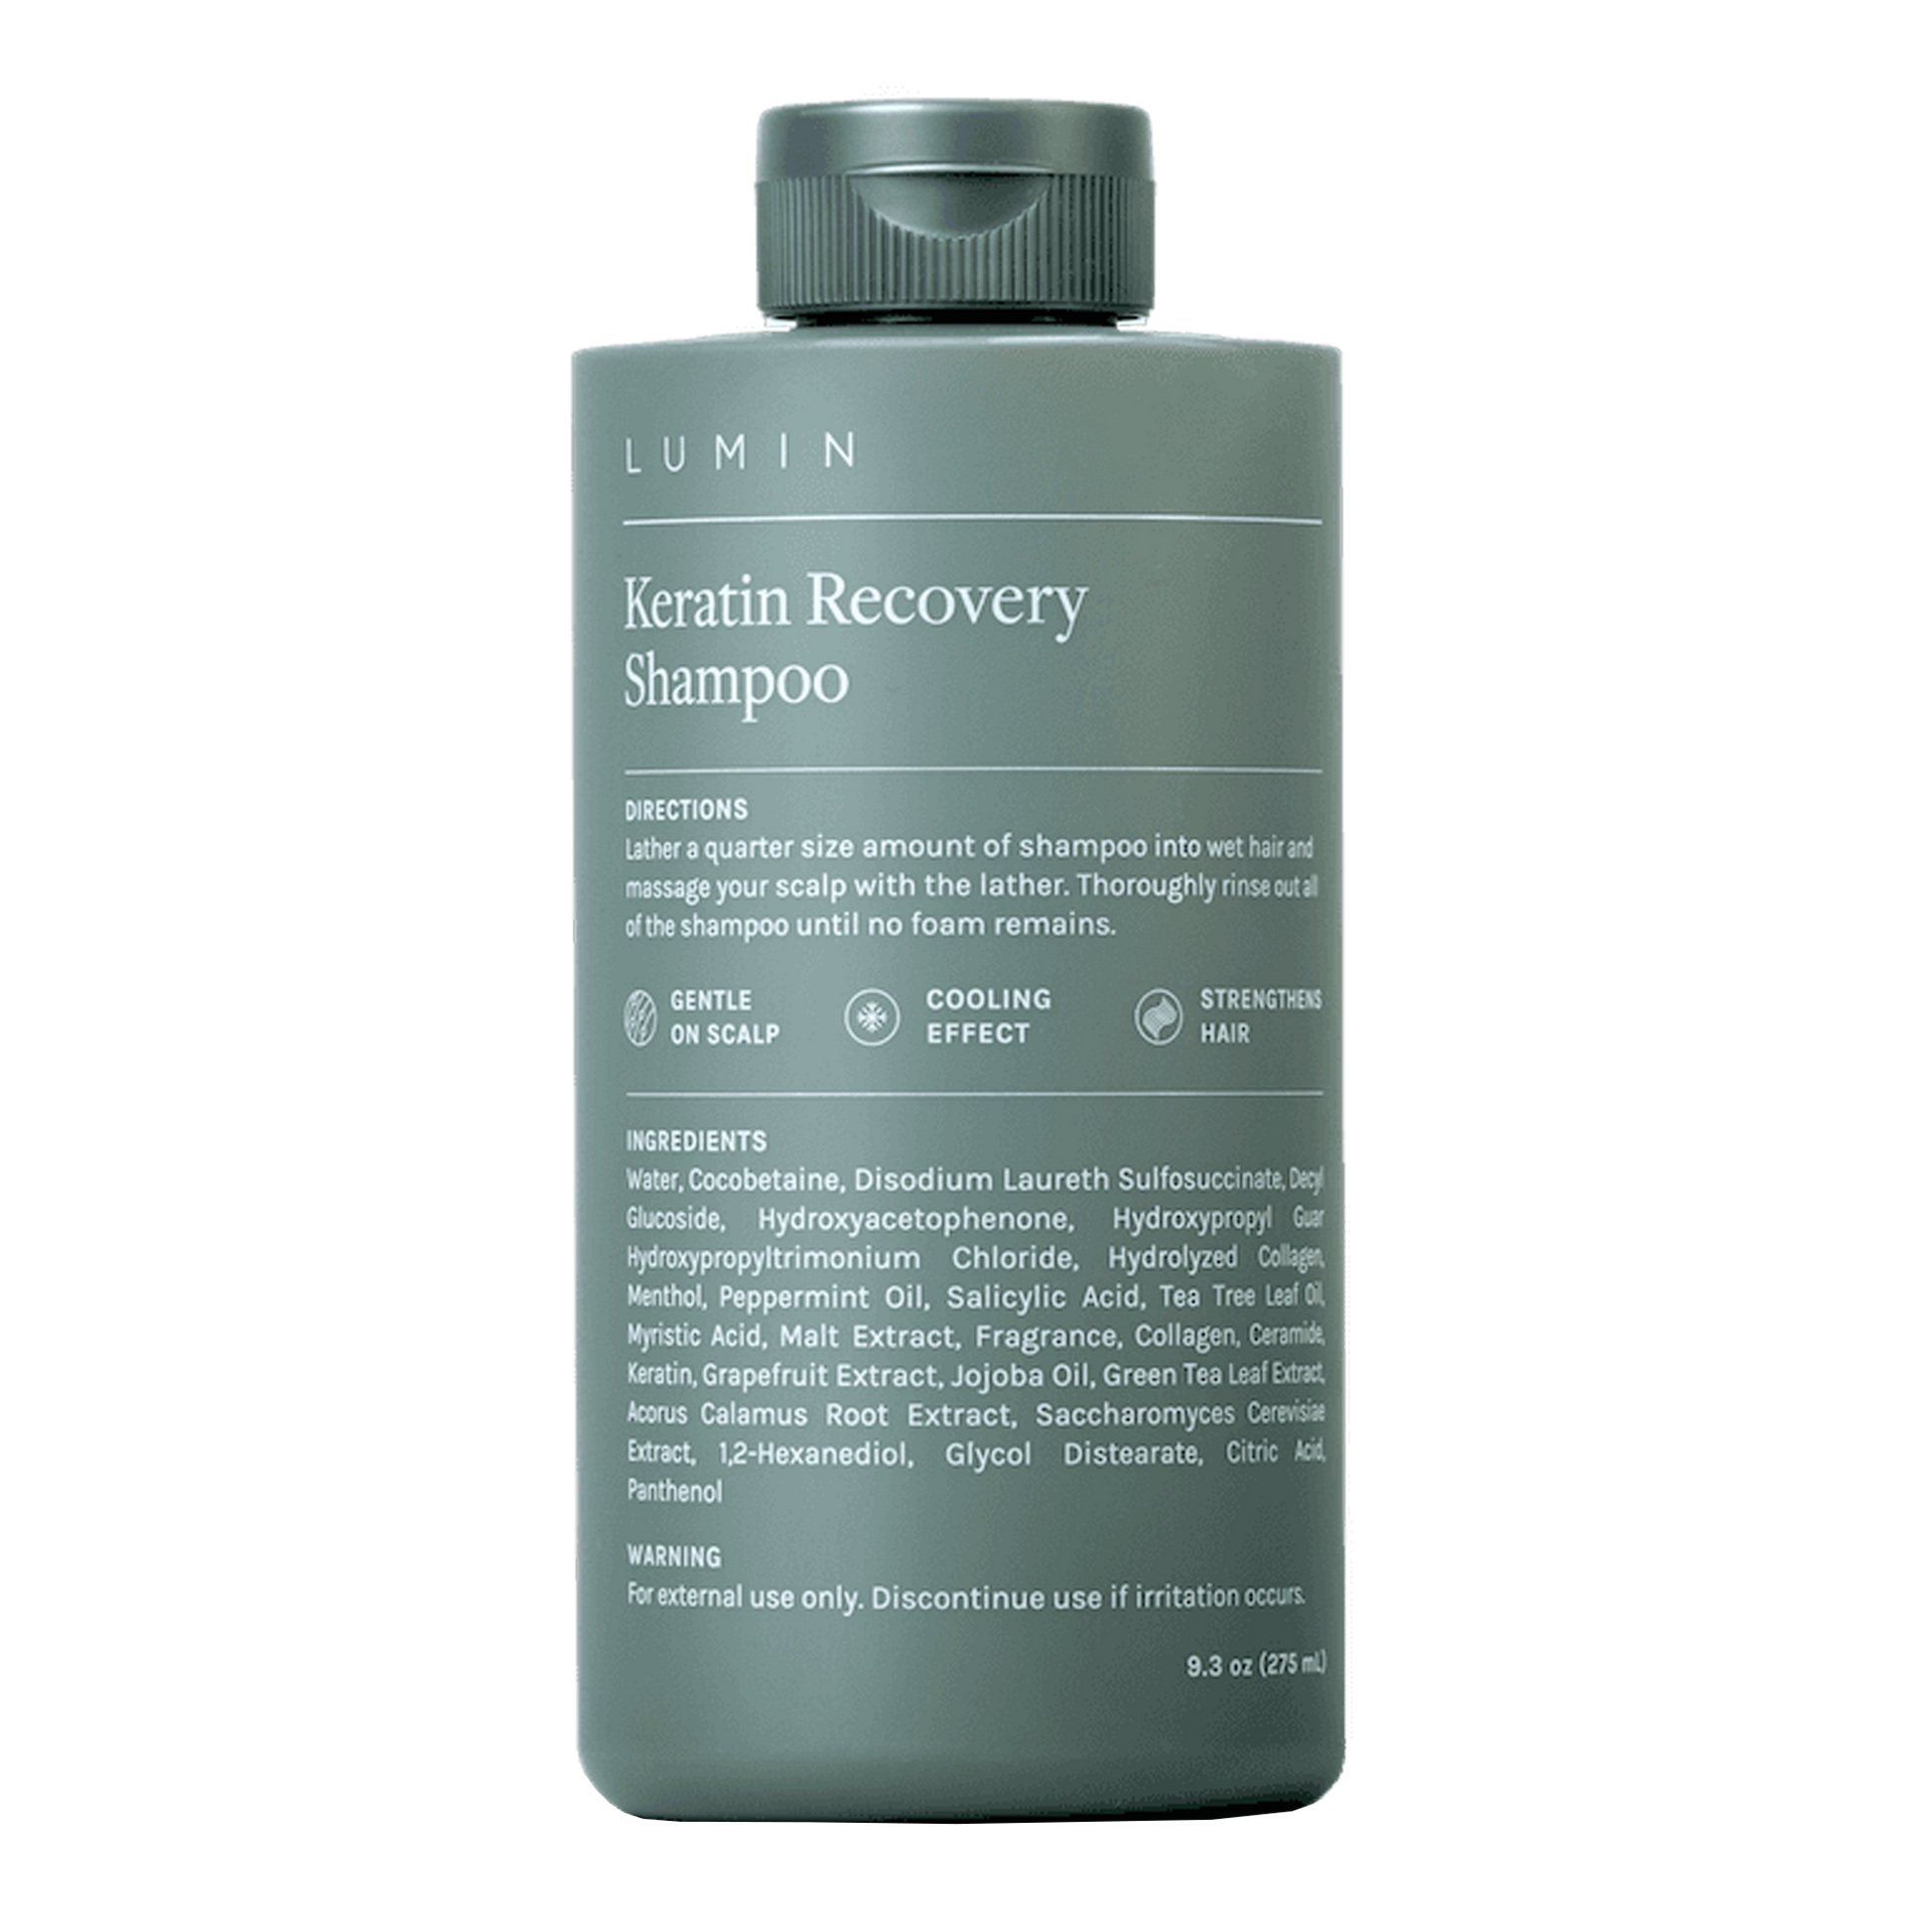 Lumin Advanced Keratin Recovery Shampoo: A healthy dose of good hair days.